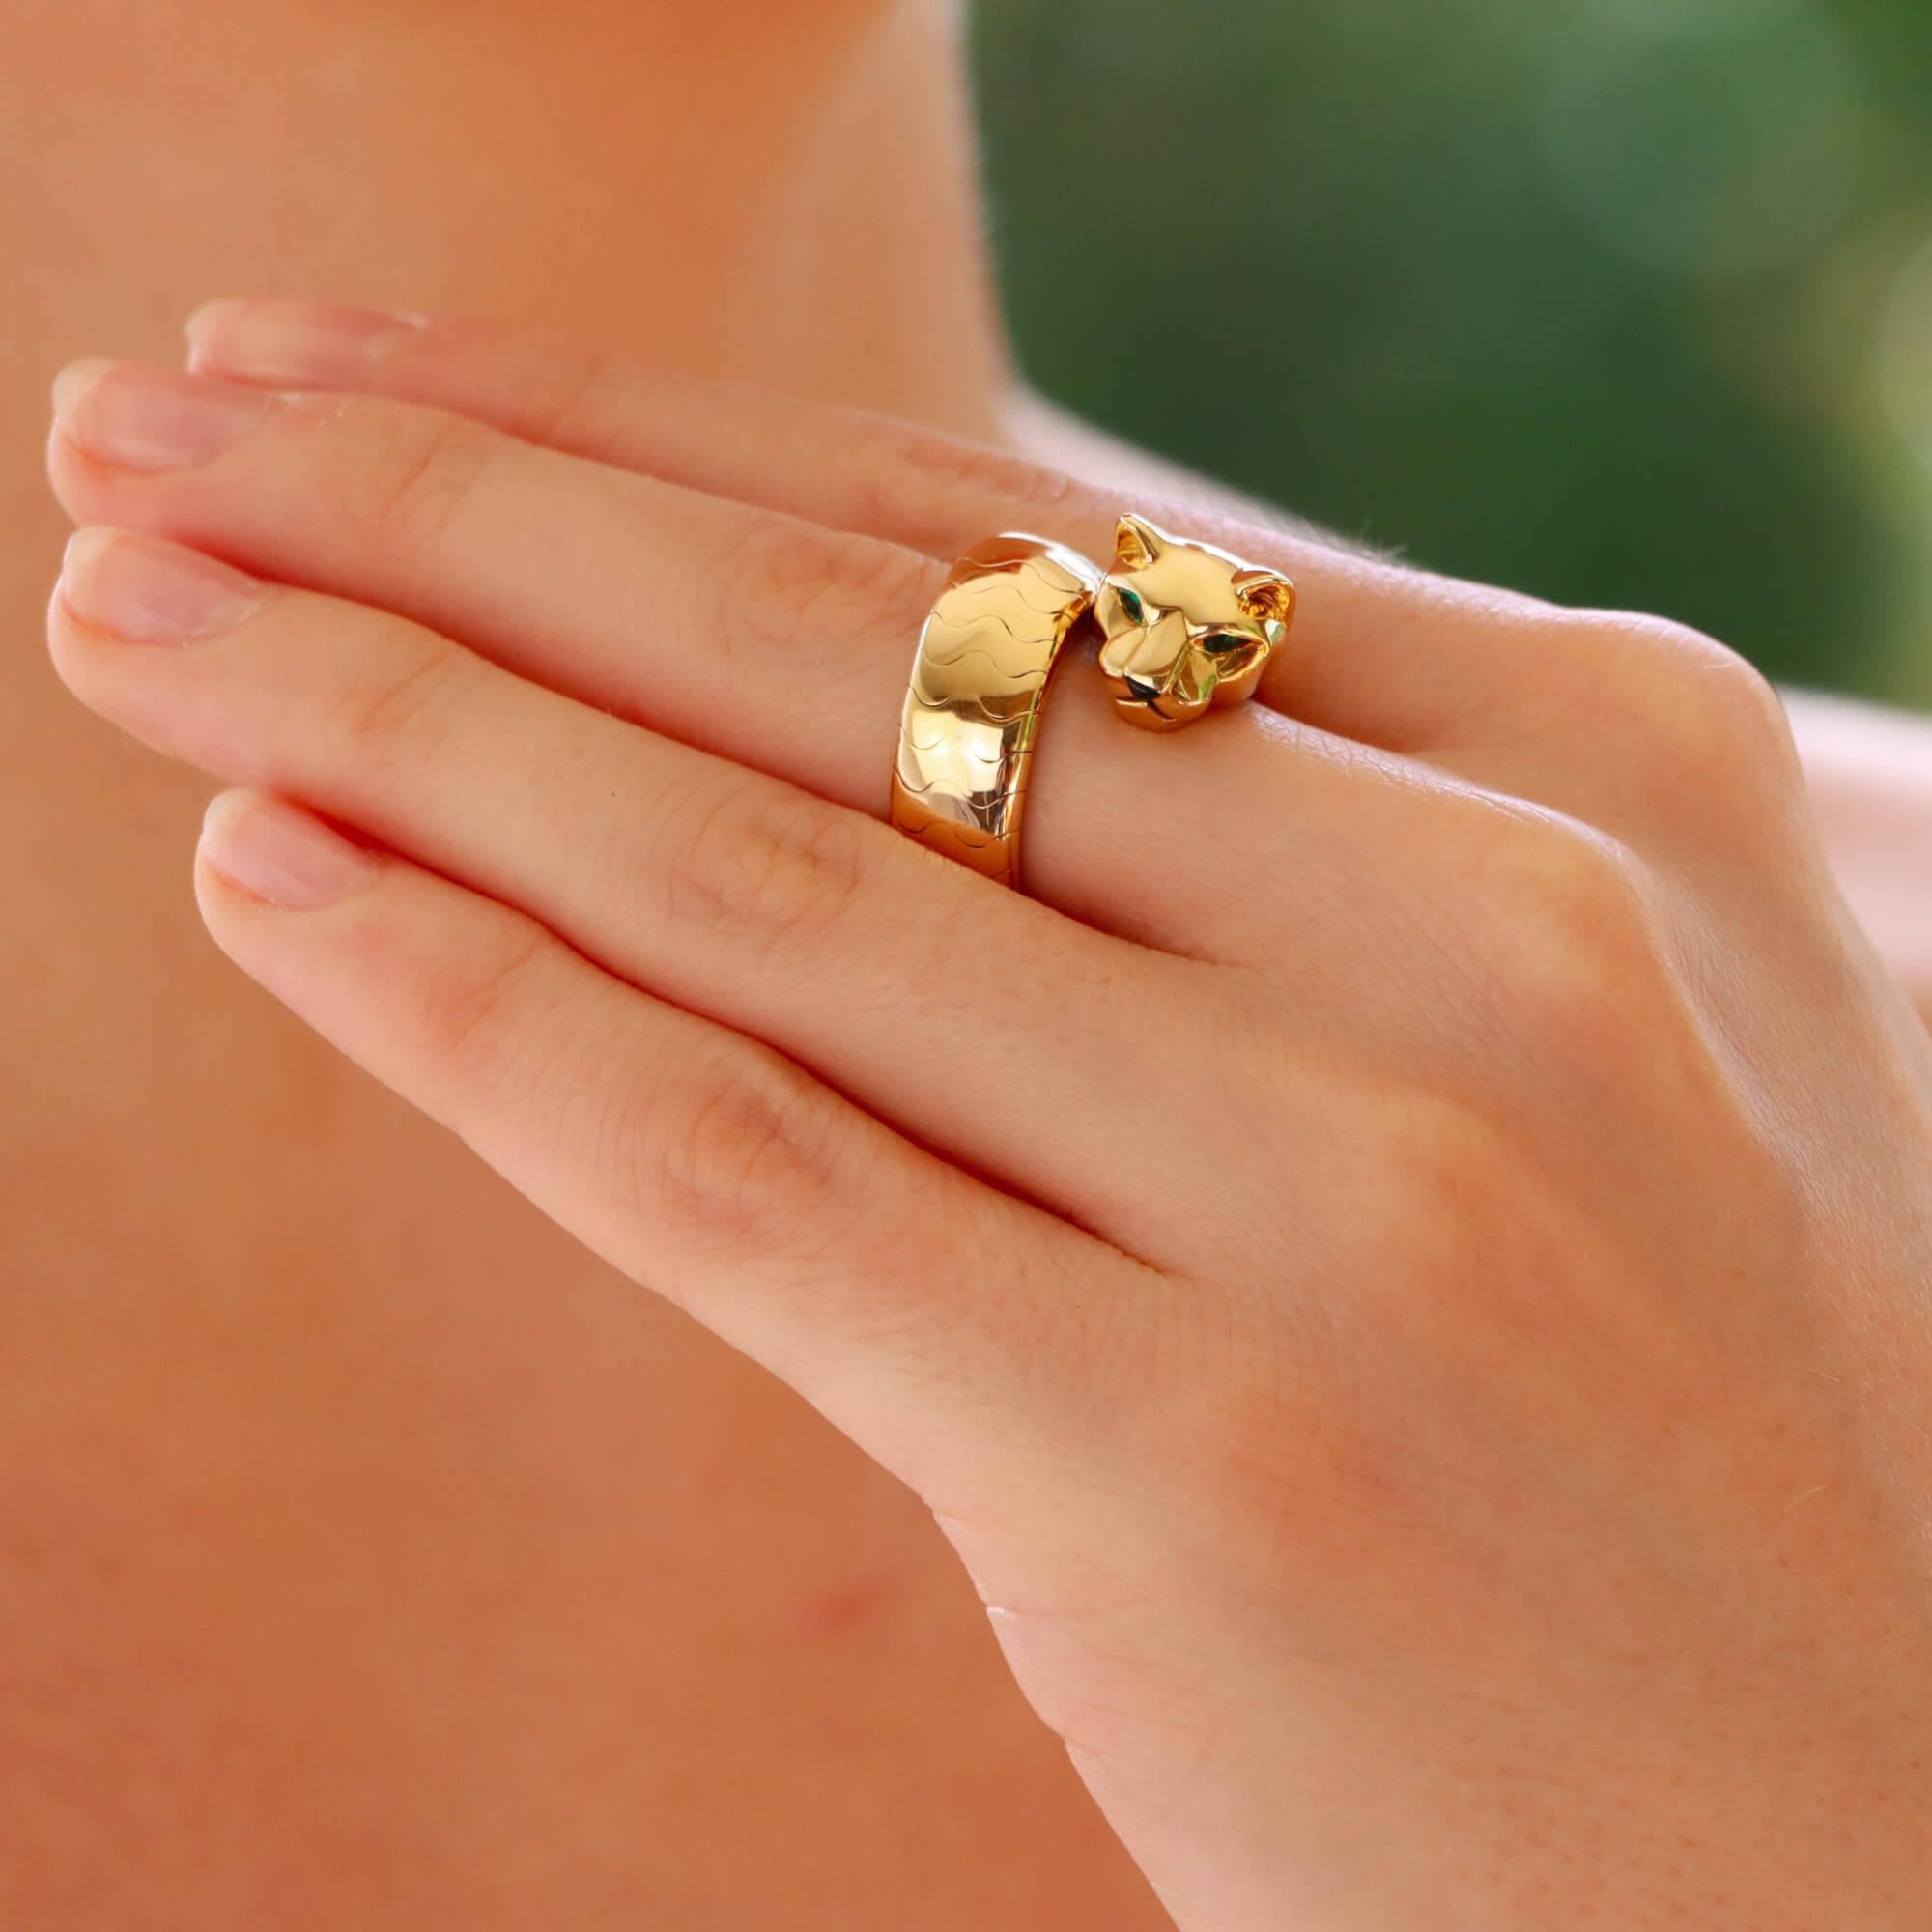 Eine stilvolle Vintage Cartier Lakarda Panther Ring in 18k Gelbgold gesetzt.

Dieser Ring mit dem ikonischen Panther-Motiv der Marke stellt einen Pantherkopf dar, der in ein leicht gegliedertes, dickes Federband übergeht. Der Panther ist wunderschön